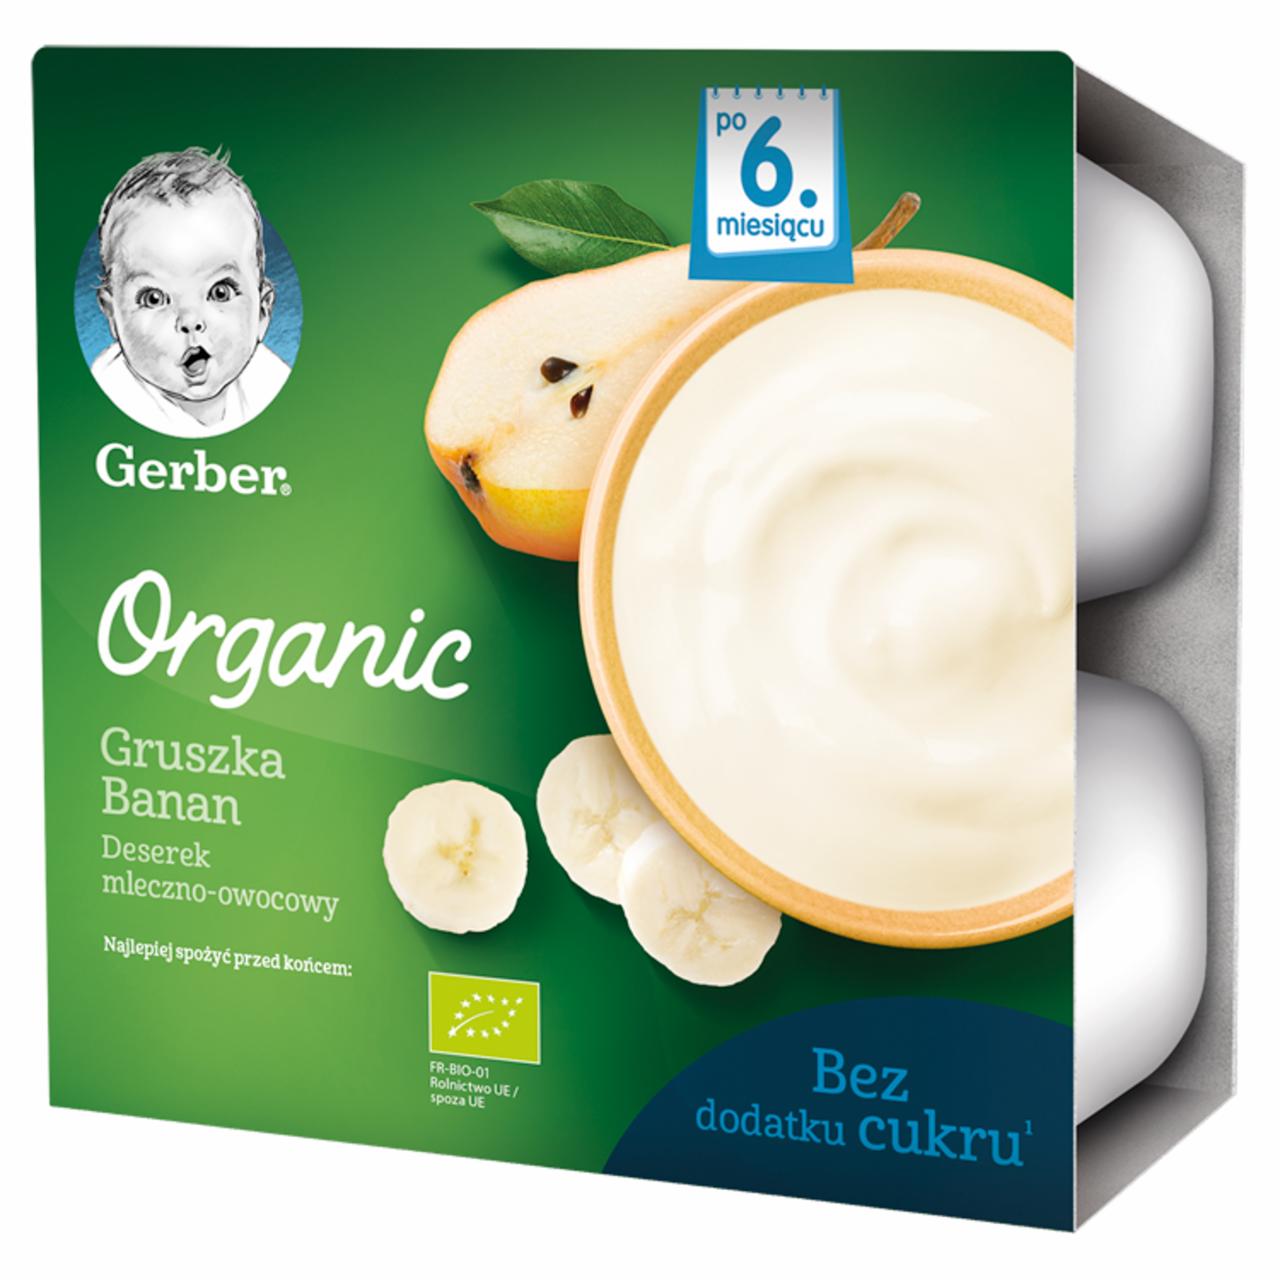 Zdjęcia - Gerber Organic Deserek mleczno-owocowy gruszka banan dla niemowląt po 6. miesiącu 360 g (4 x 90 g)